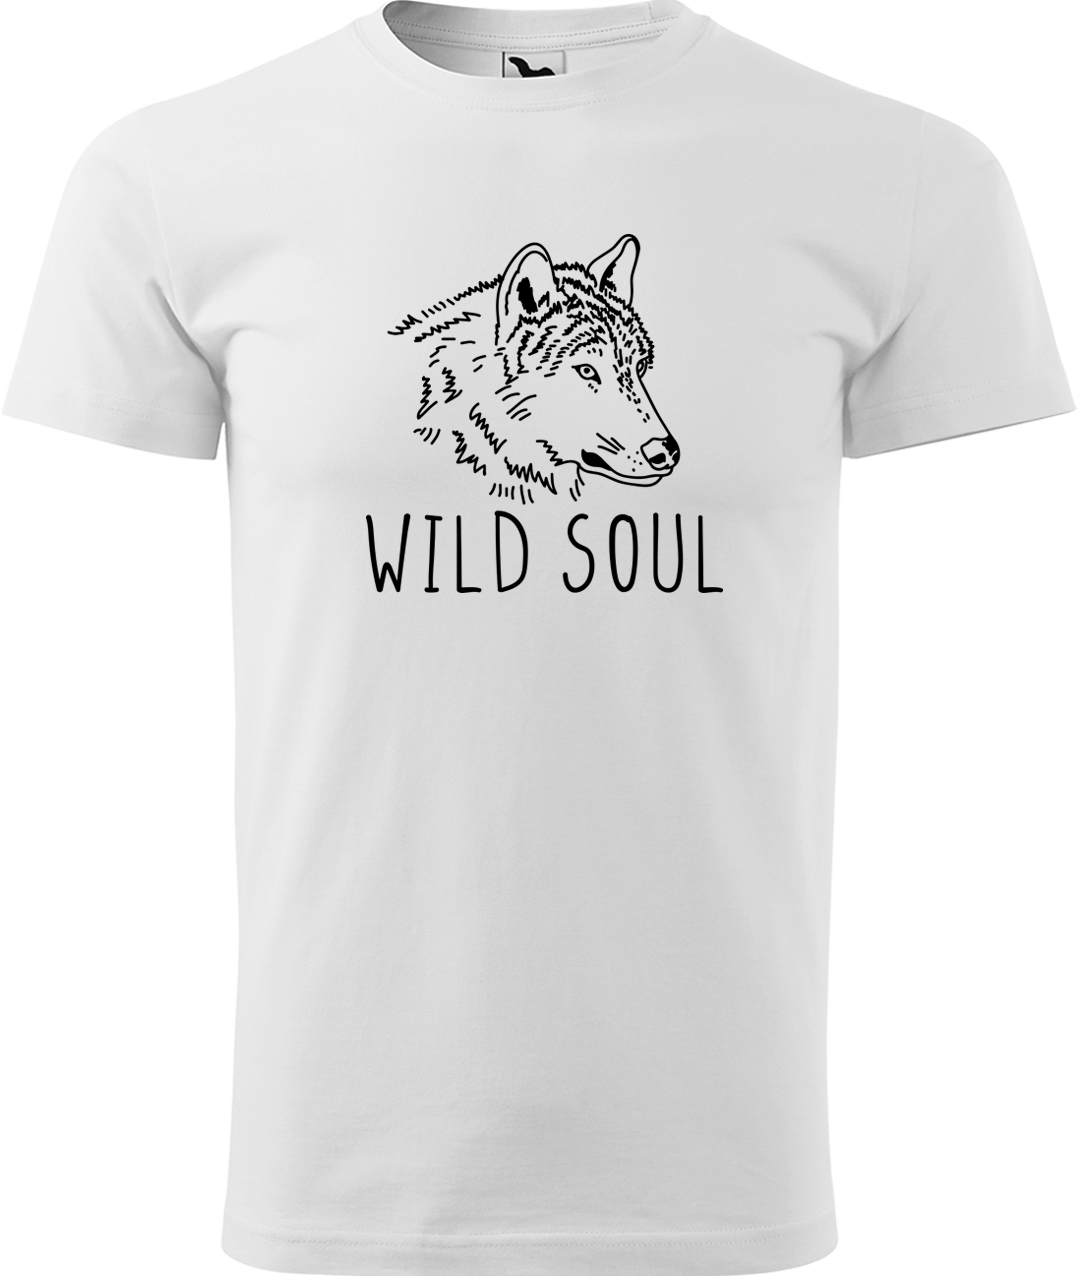 Pánské tričko s vlkem - Wild soul Velikost: 3XL, Barva: Bílá (00), Střih: pánský